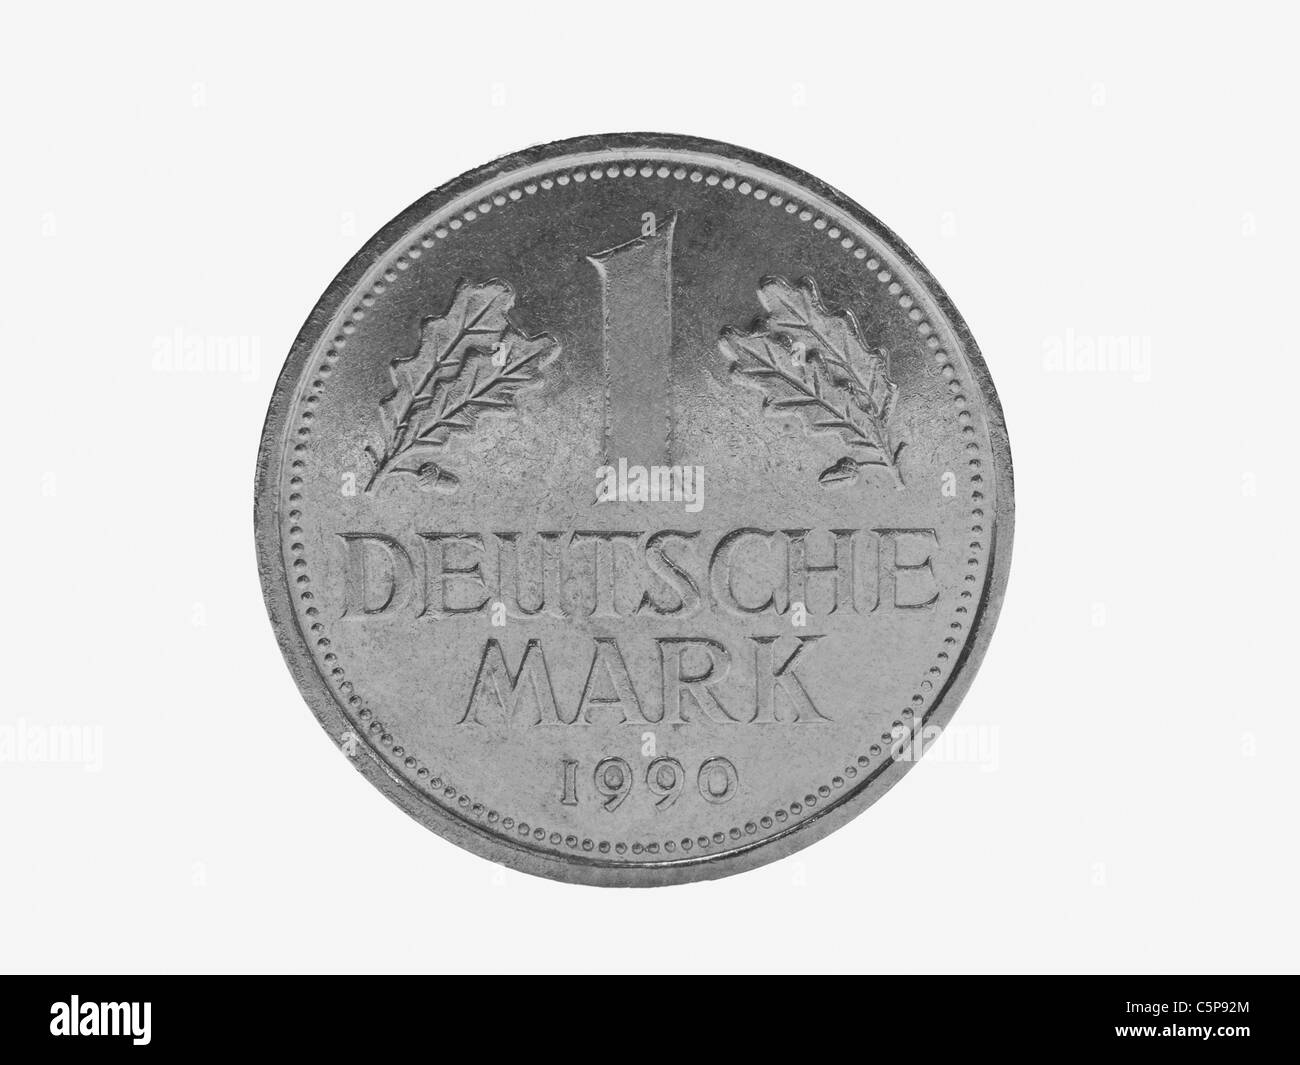 Detailansicht Einer Ein DM-Münze | Detail-Foto einer Deutsche Mark-Münze Stockfoto